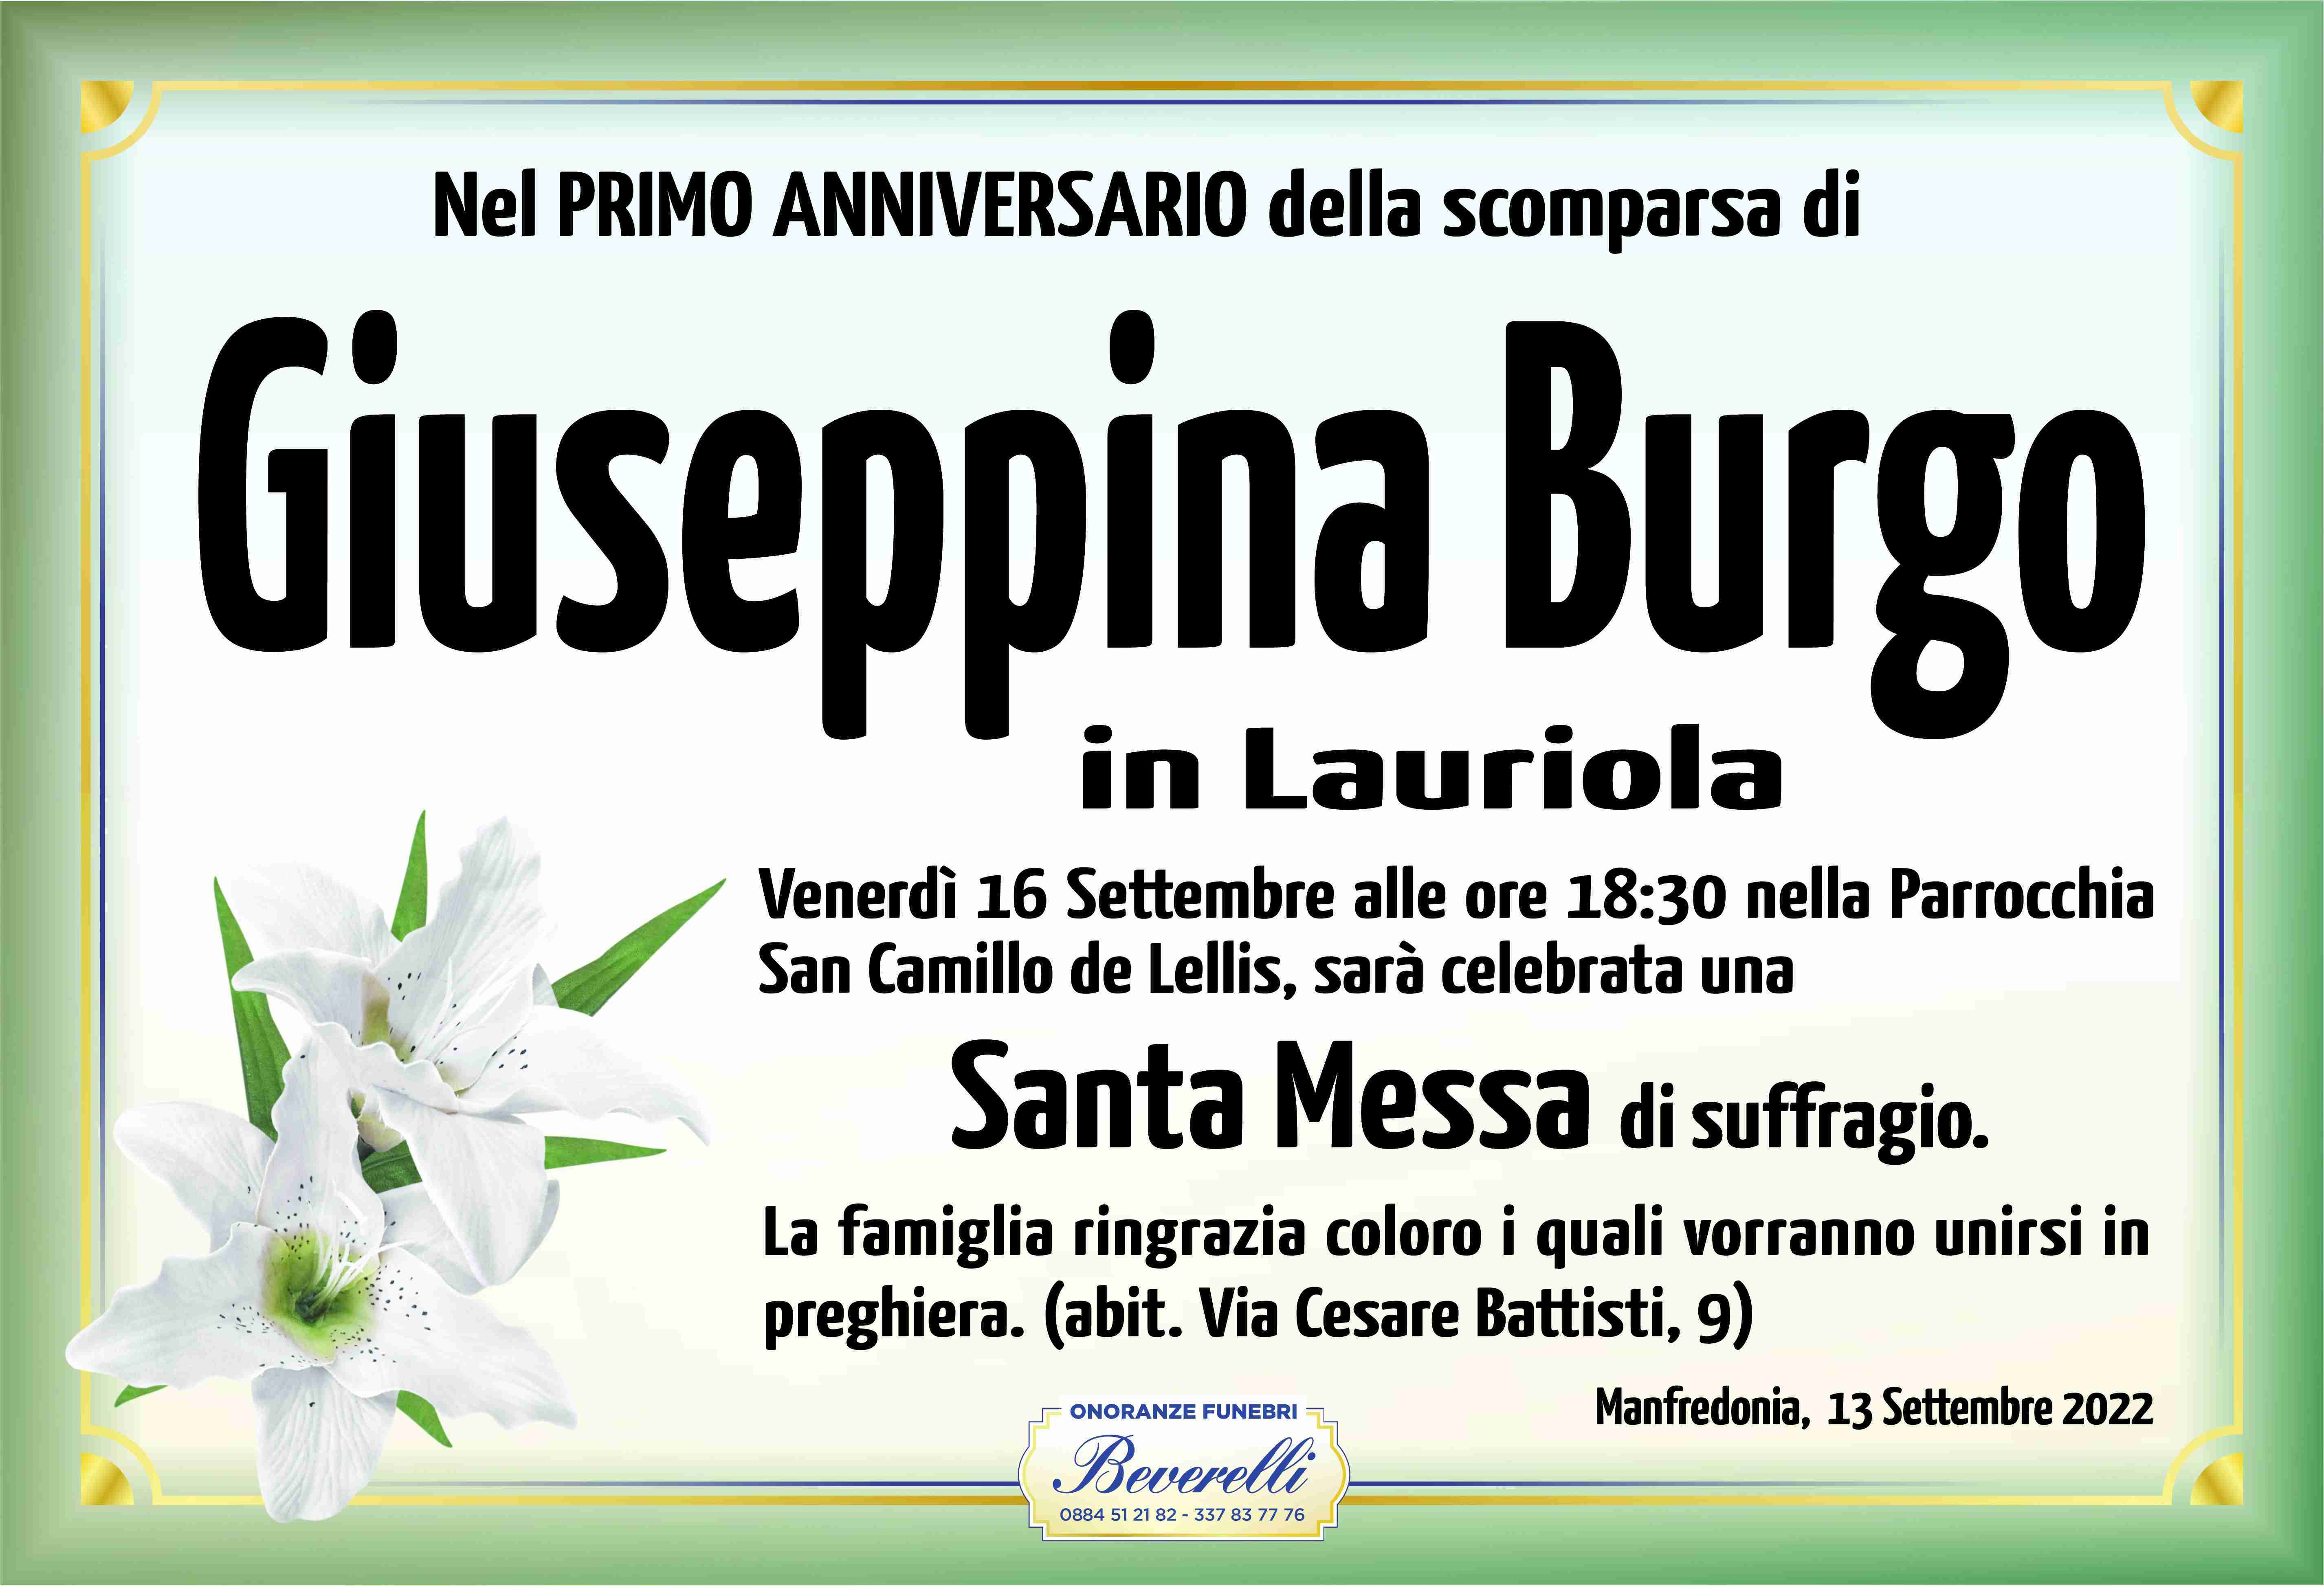 Giuseppina Burgo